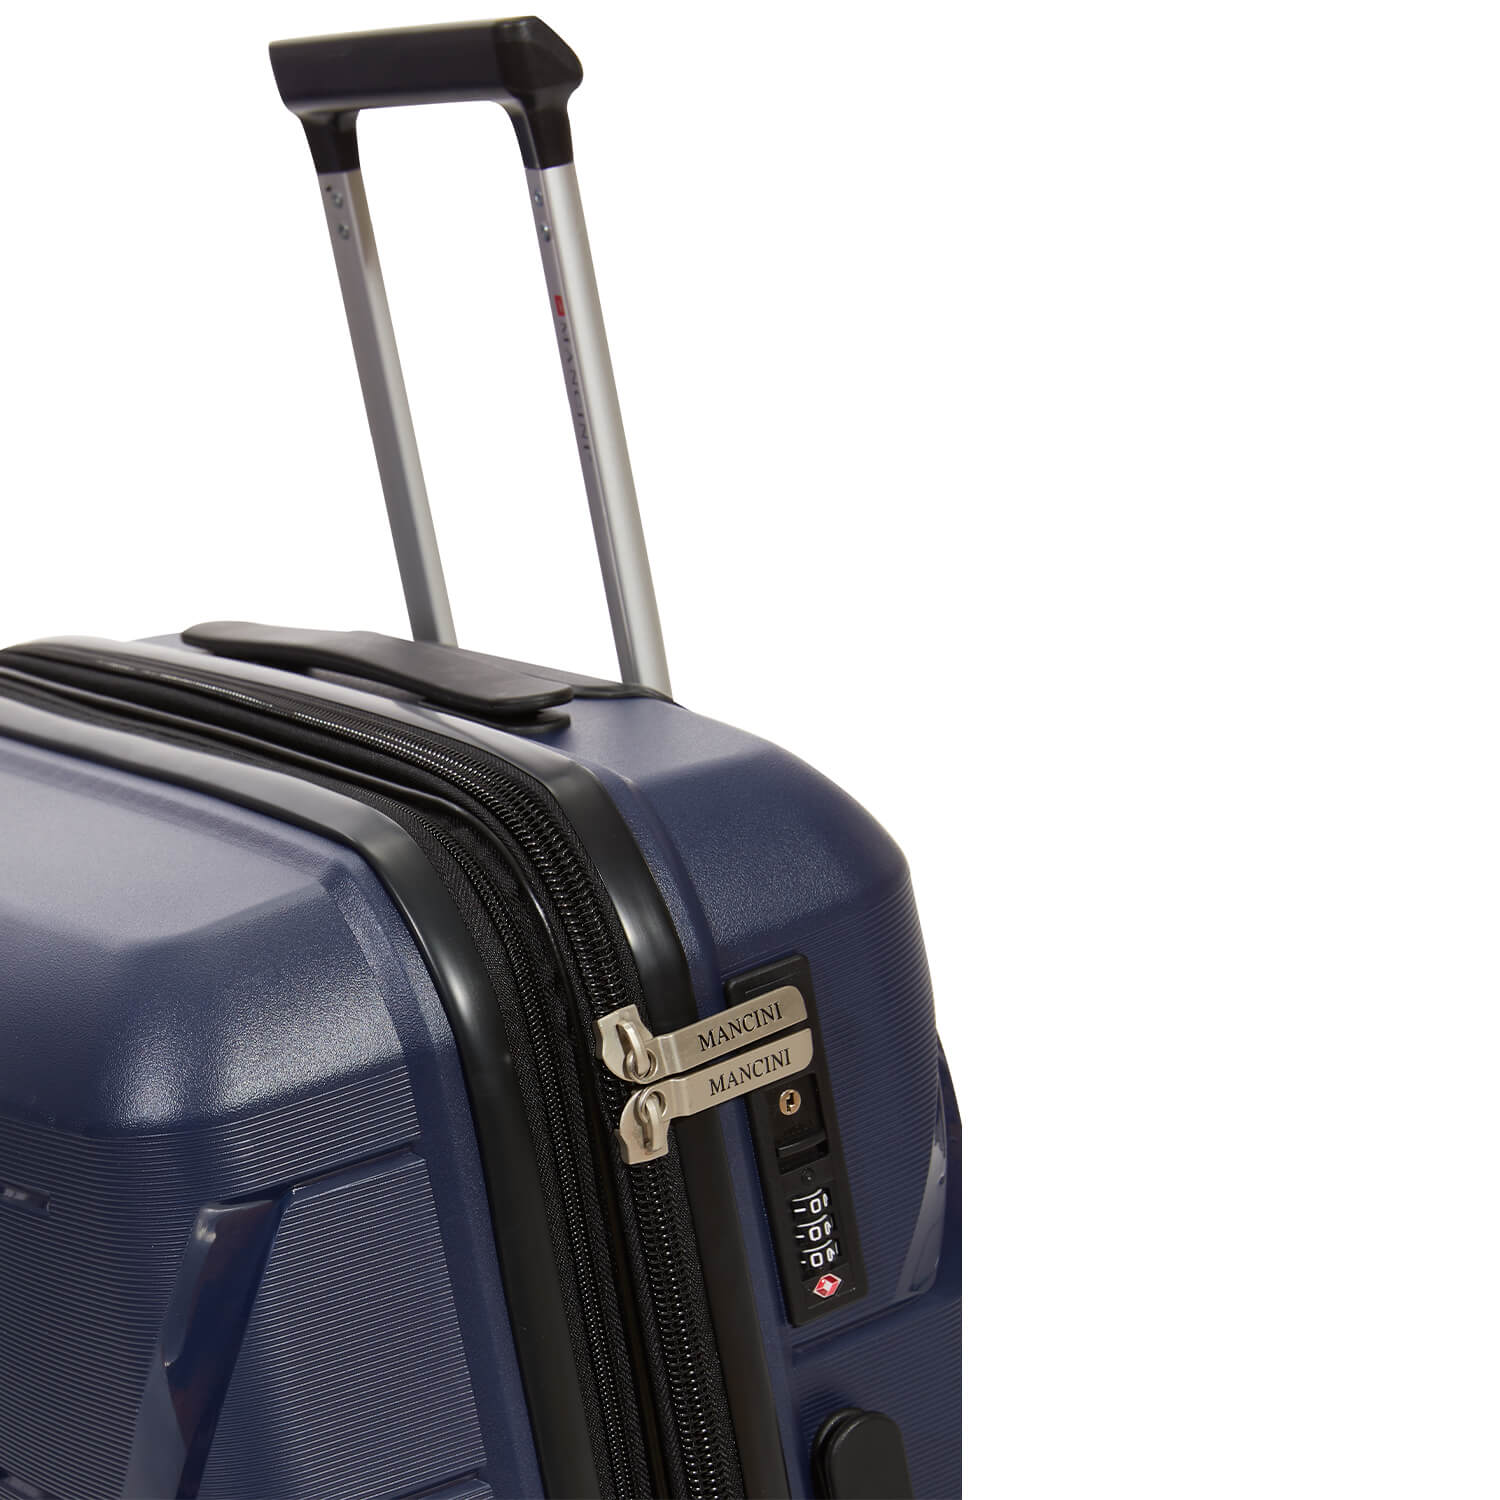 Jeu de 3 valises polypropylene extensible pivotants à 4 roues collection Melbourne